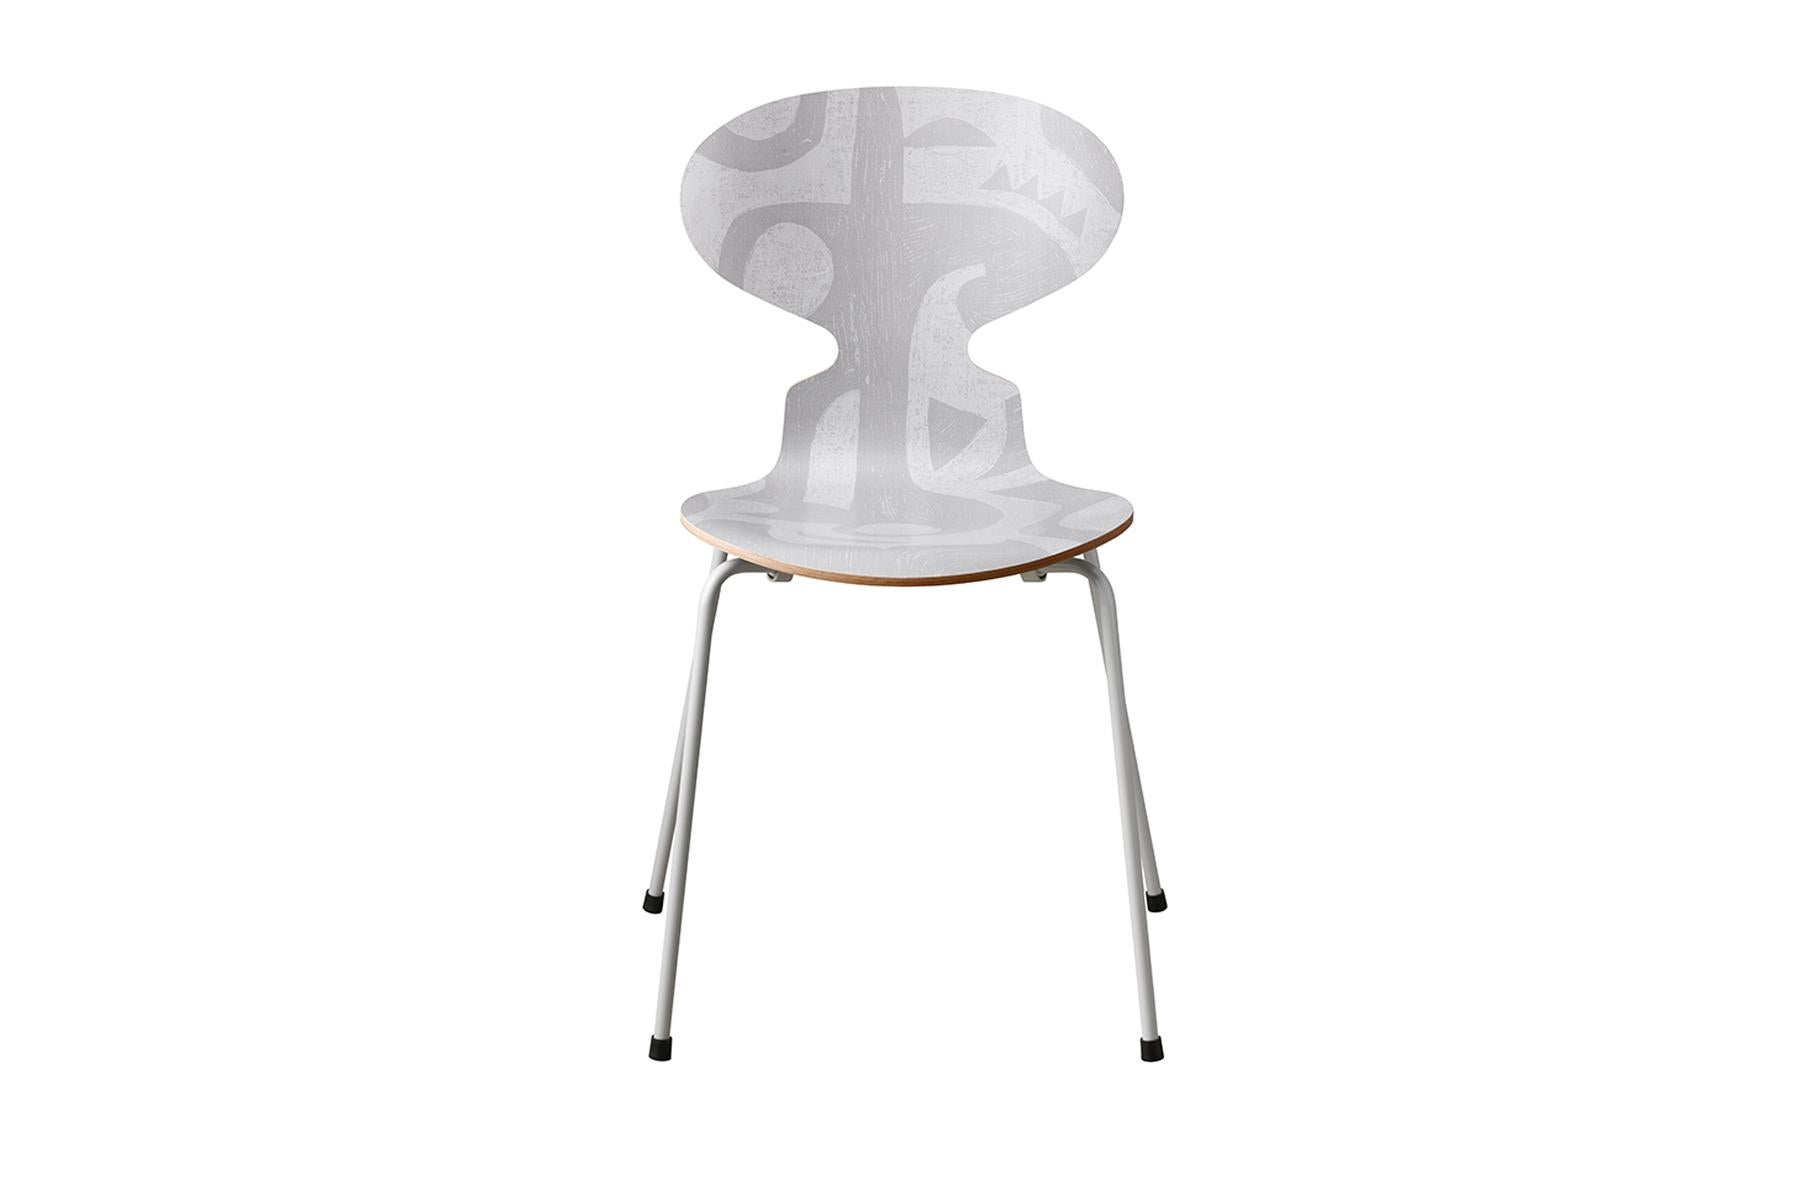 Saviez-vous, qu'à l'origine, Arne Jacobsen avait conçu la chaise Ant™ comme une chaise à trois pieds ? Aujourd'hui, l'Ant™ se décline en différents types de placage, ainsi qu'en deux finitions : frêne coloré ou laque. Toutes les chaises sont